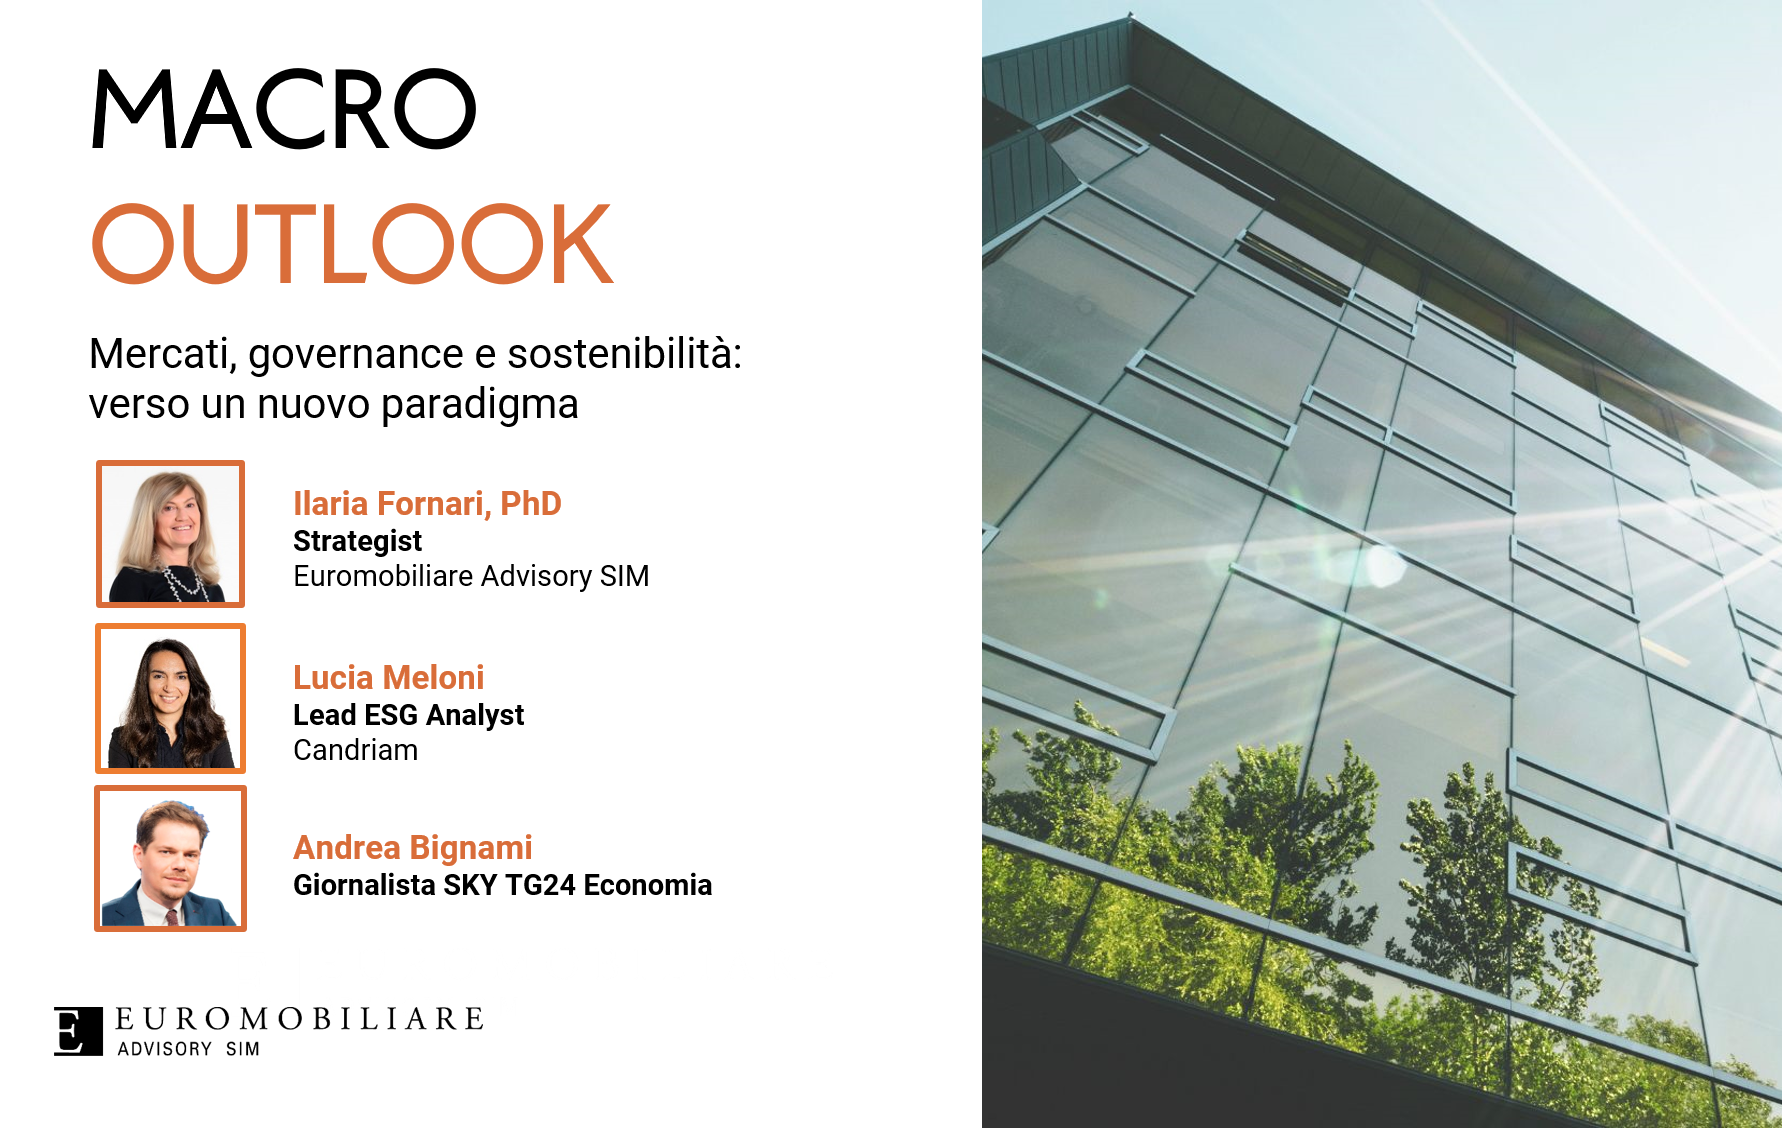 Macro Outlook - Scenario di mercato II trimestre 2023 mercati, governance e sostenibilita'